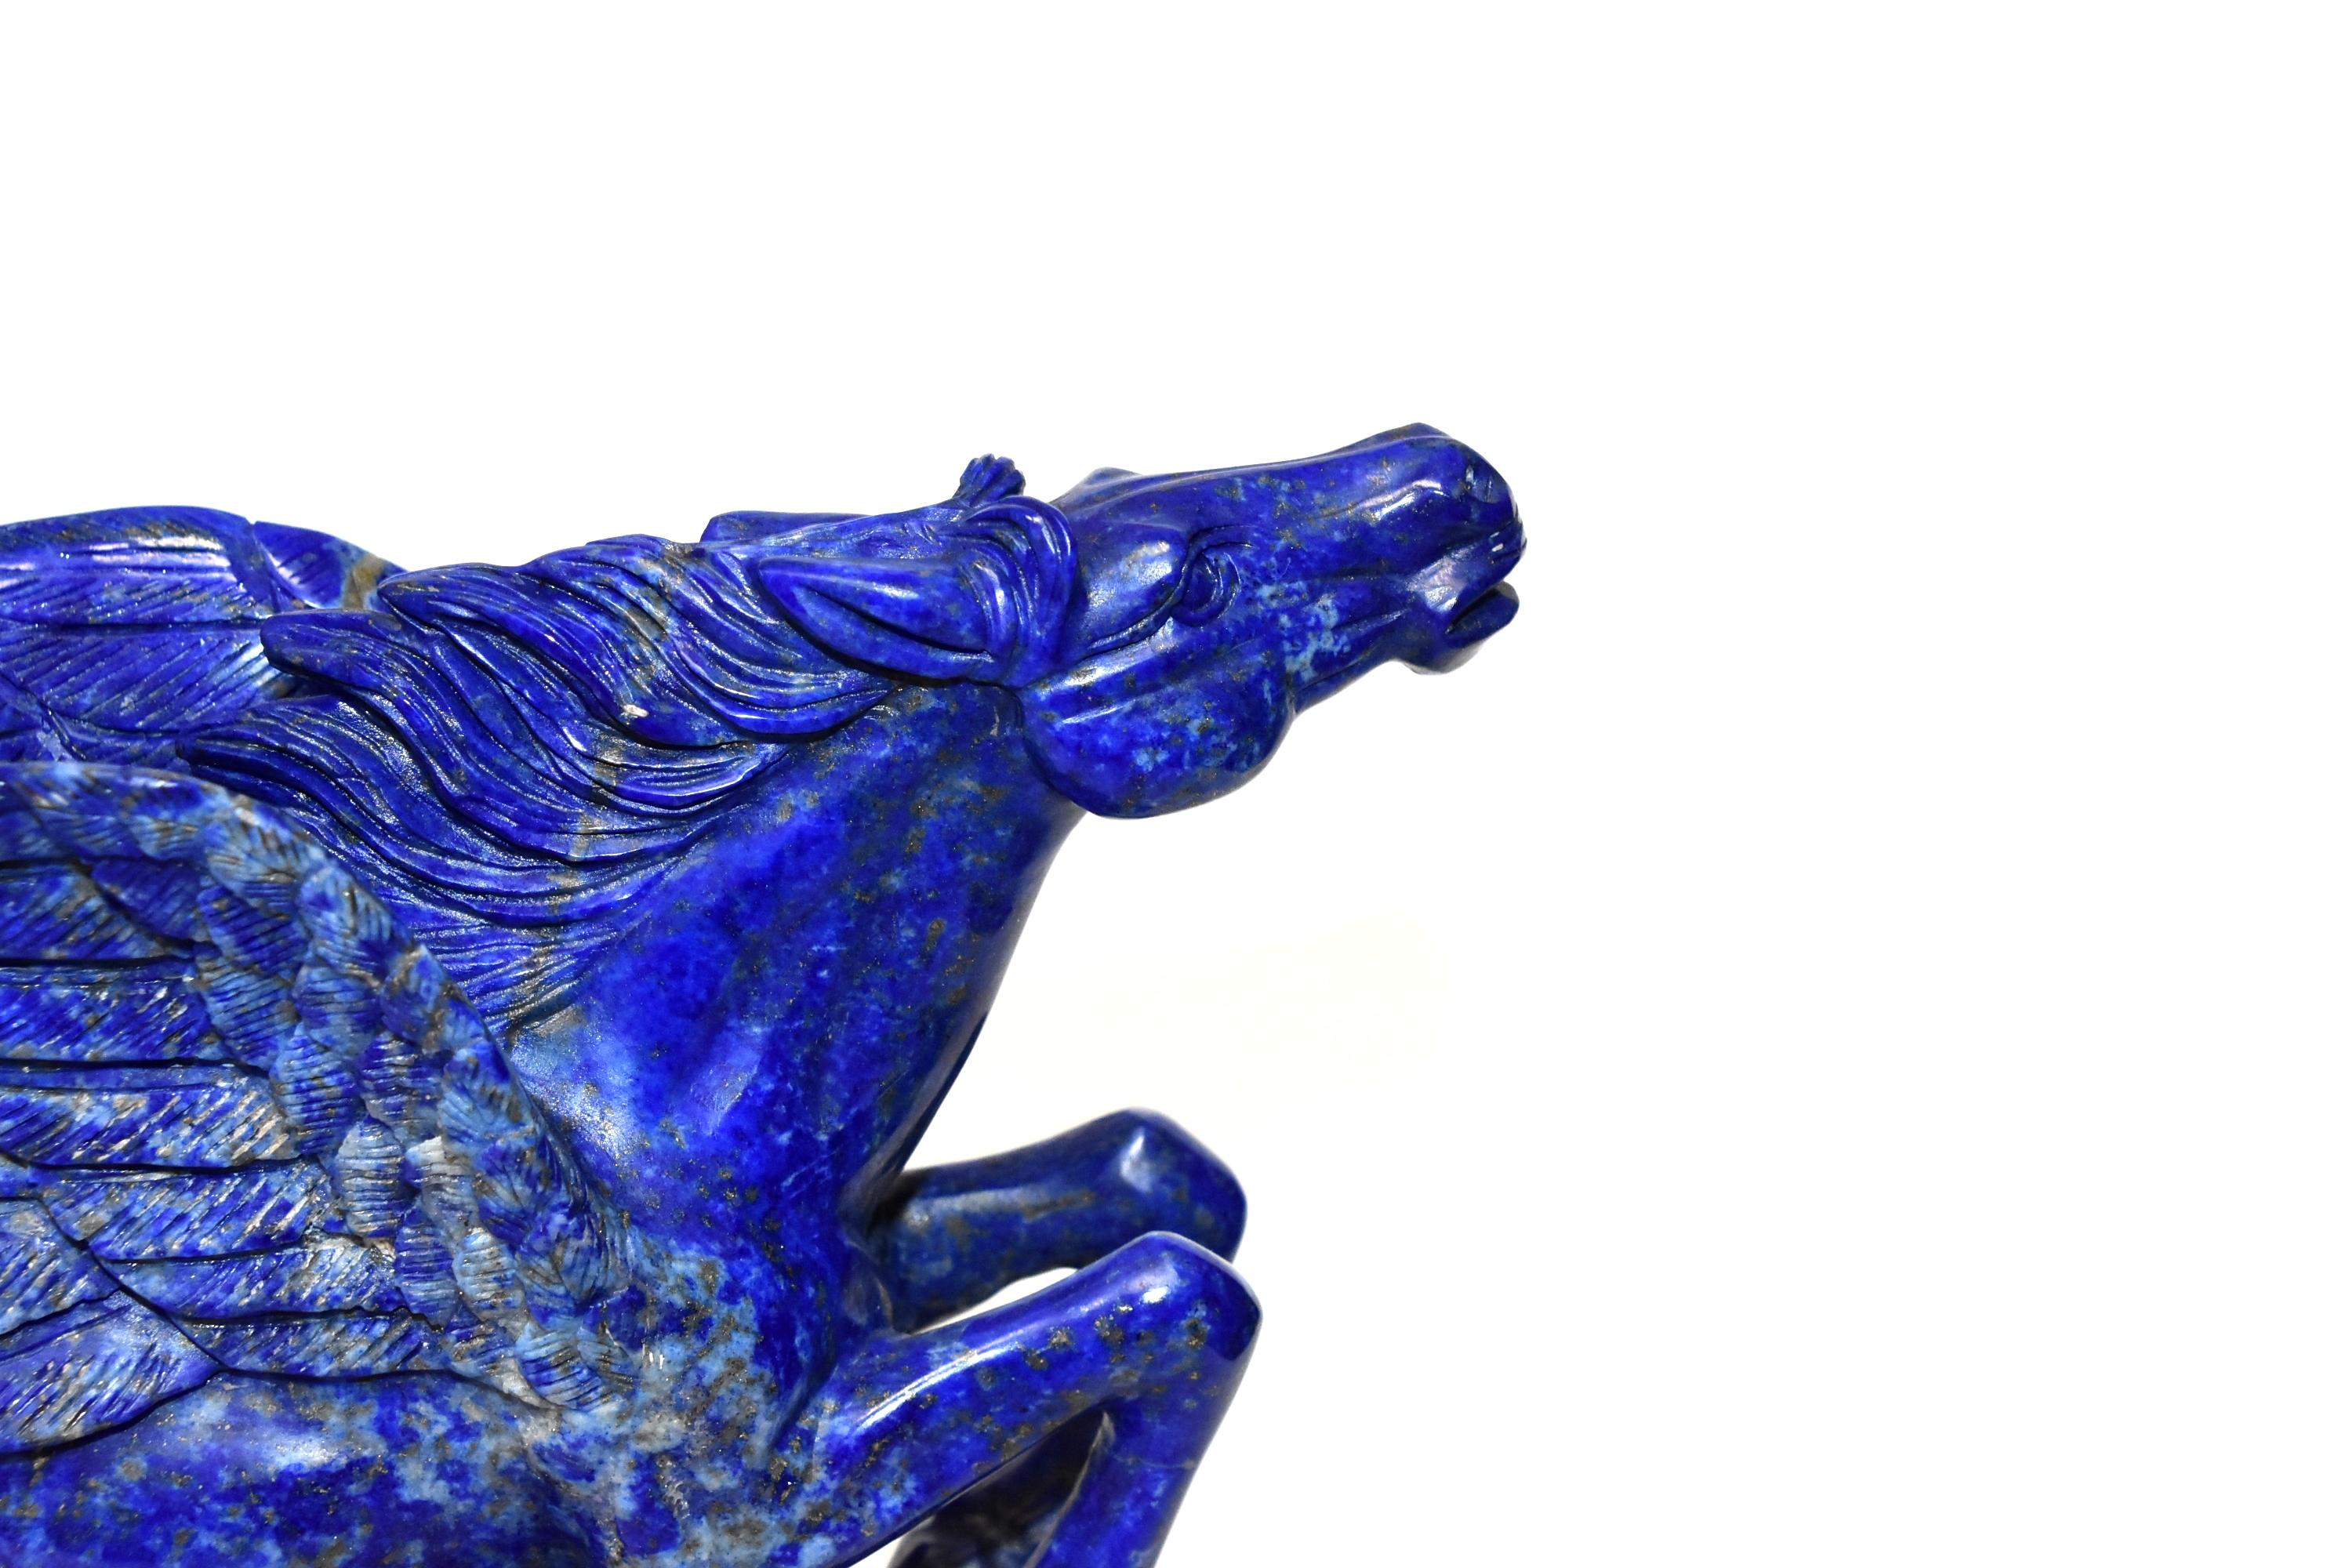 Lapis Lazuli Statue, 4.5 Lb Pegasus Sculpture by Known Artist 1